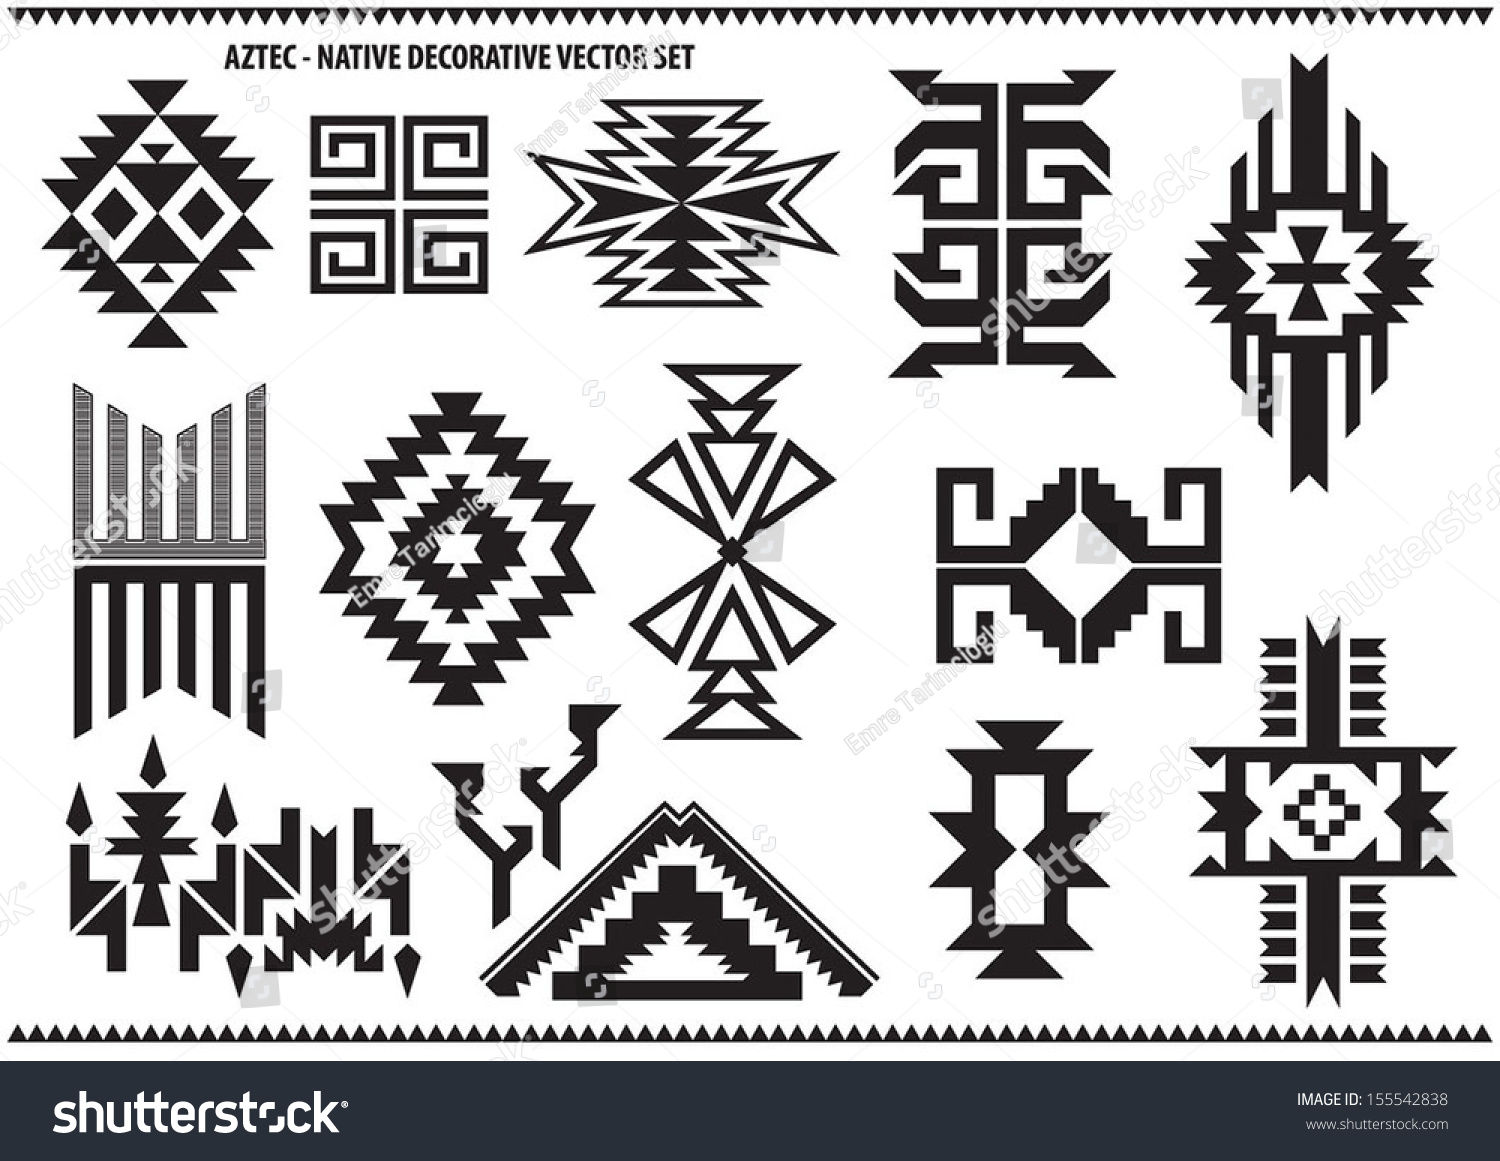 Aztec Decorative Vector Set Stock Vector 155542838 - Shutterstock